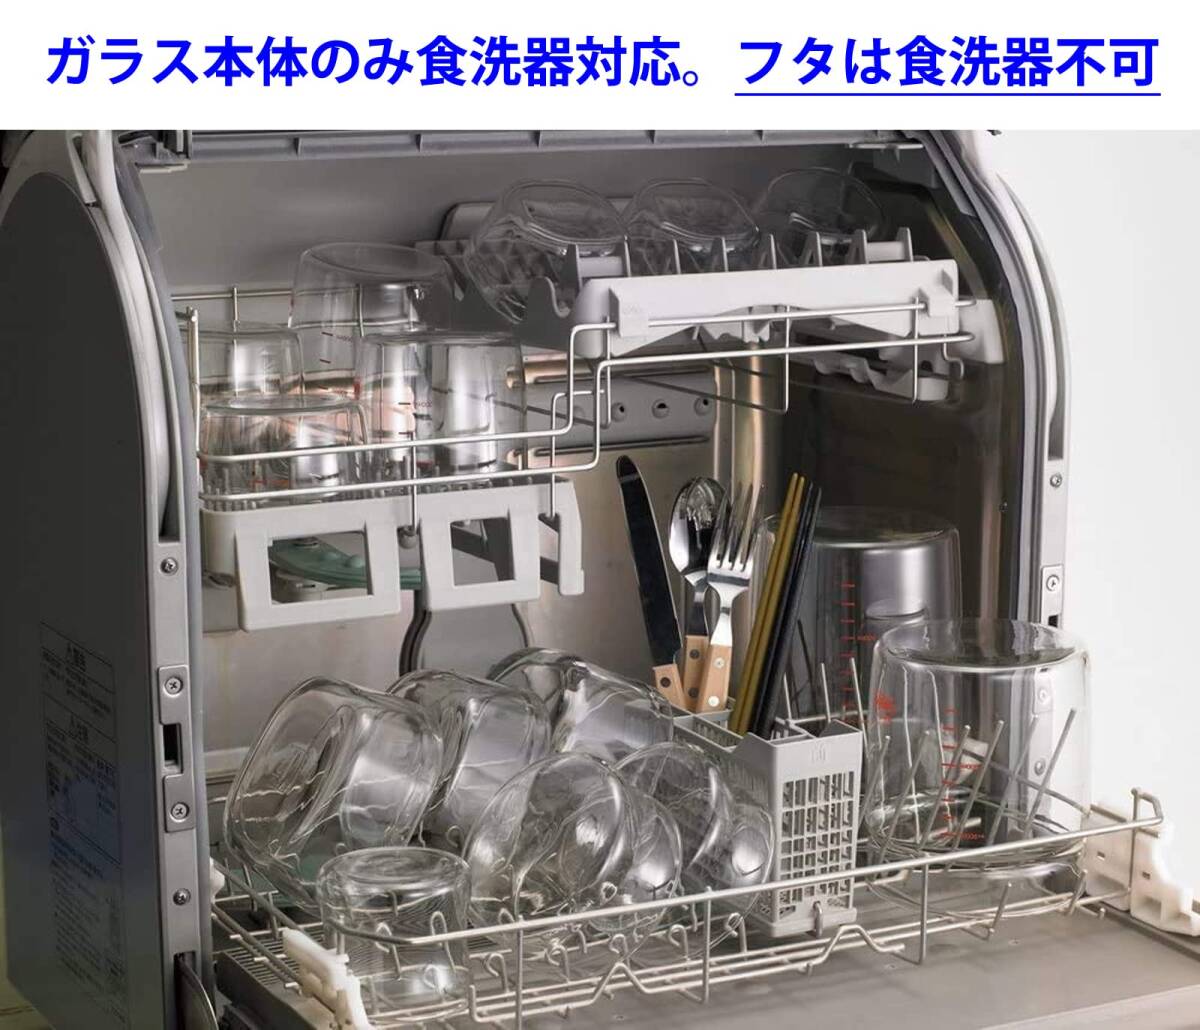 iwaki(イワキ) 耐熱ガラス 保存容器 グリーン 3個セット パック&レンジ PS-PRN-3G2_画像6